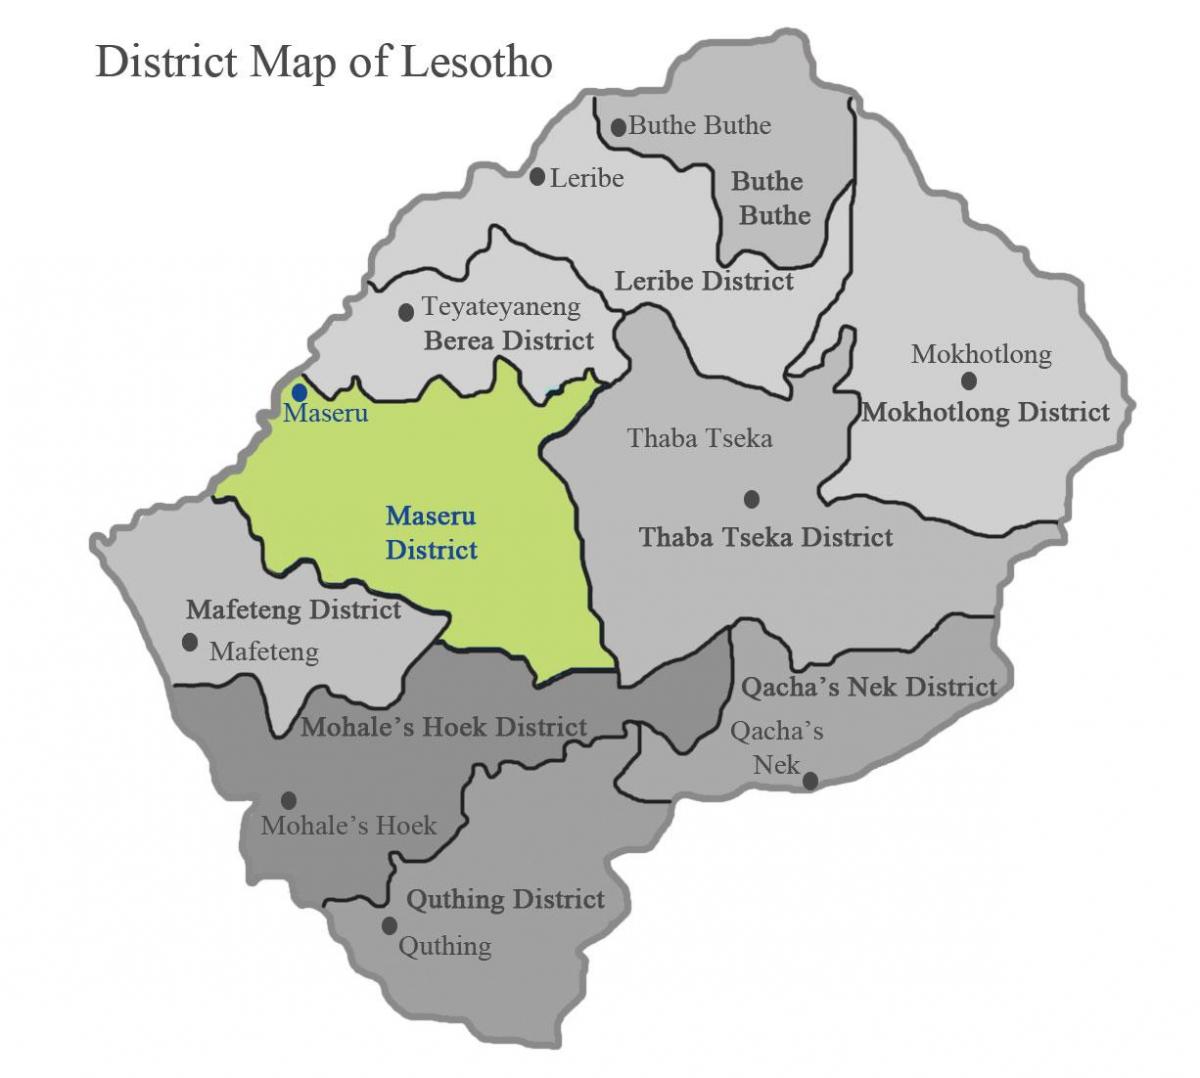 mapa de Lesotho mostrando los distritos